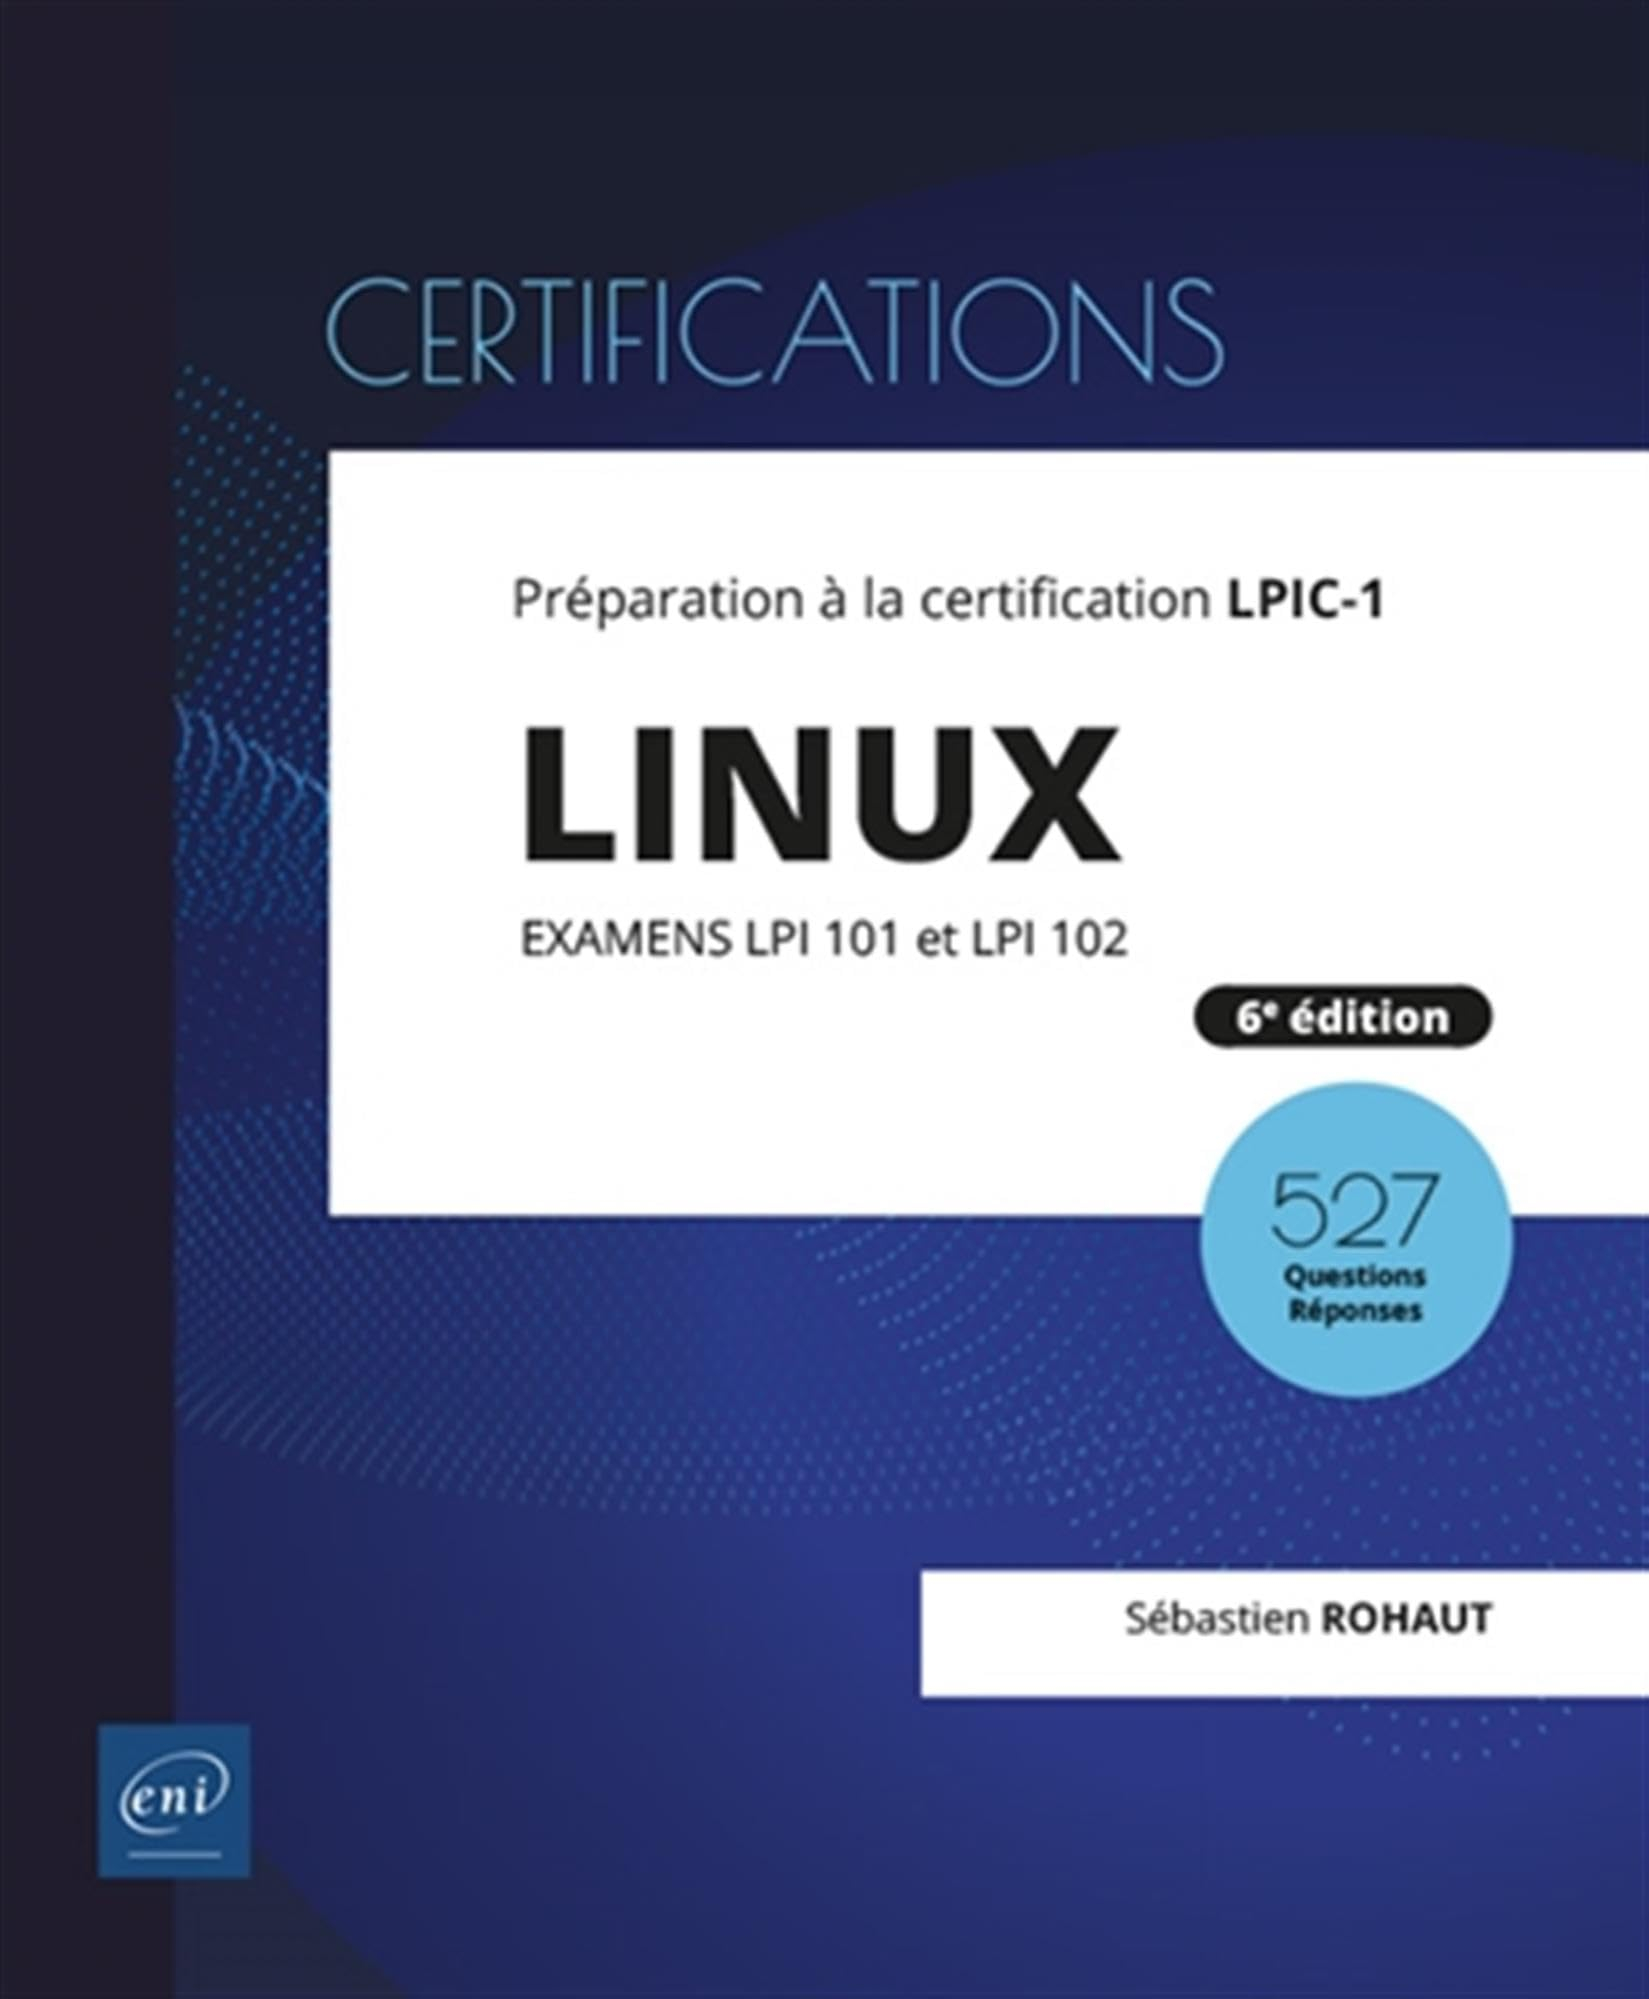 Linux : préparation à la certification LPIC-1, examens LPI 101 et LPI 102 : 47 travaux pratiques, 52